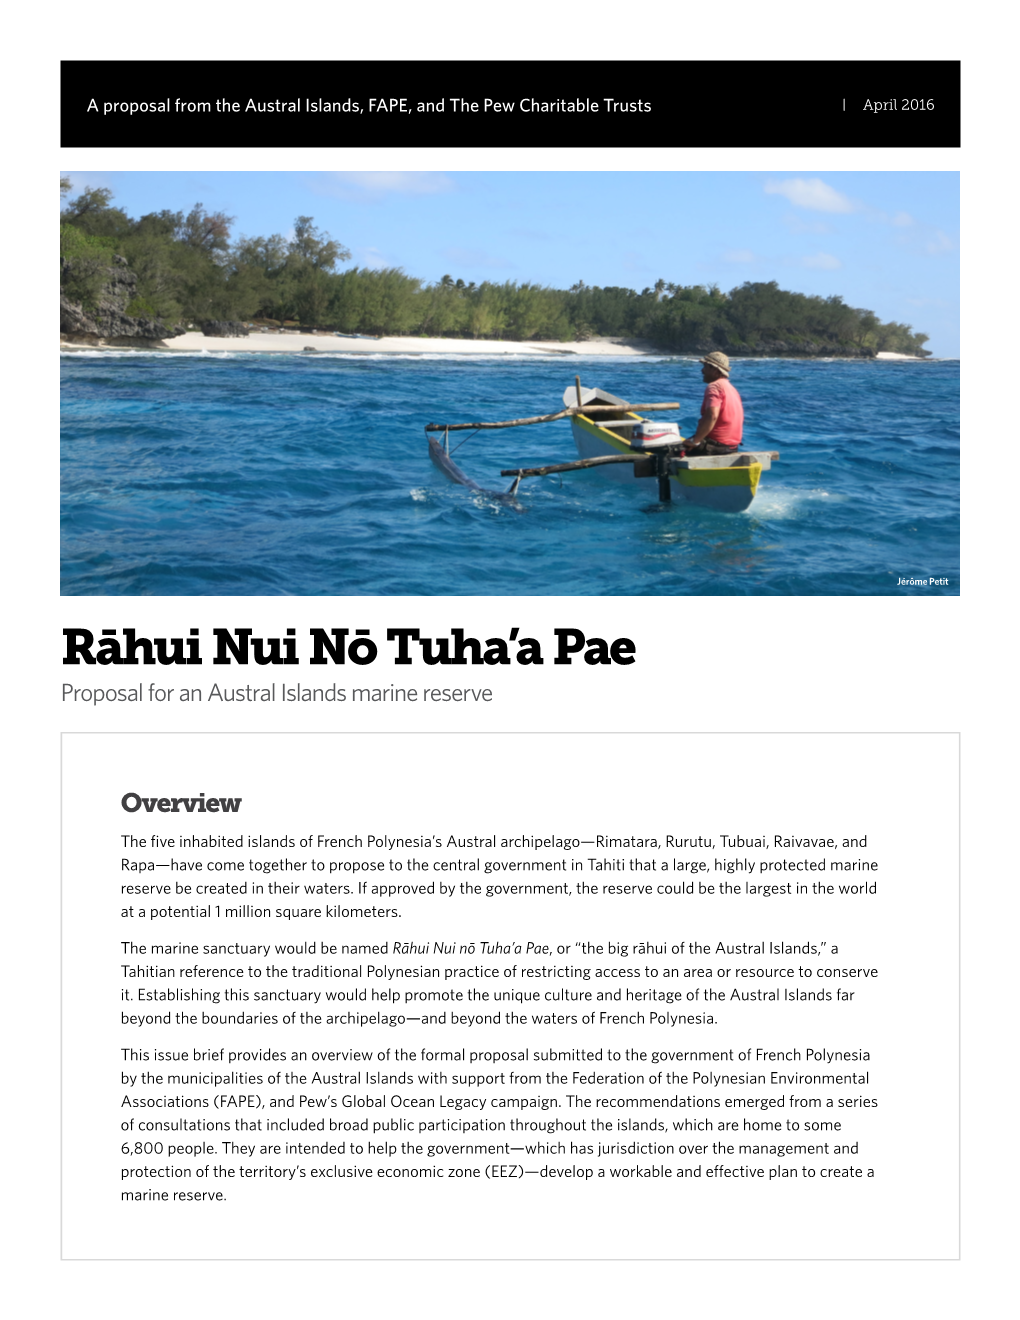 Rāhui Nui Nō Tuha'a